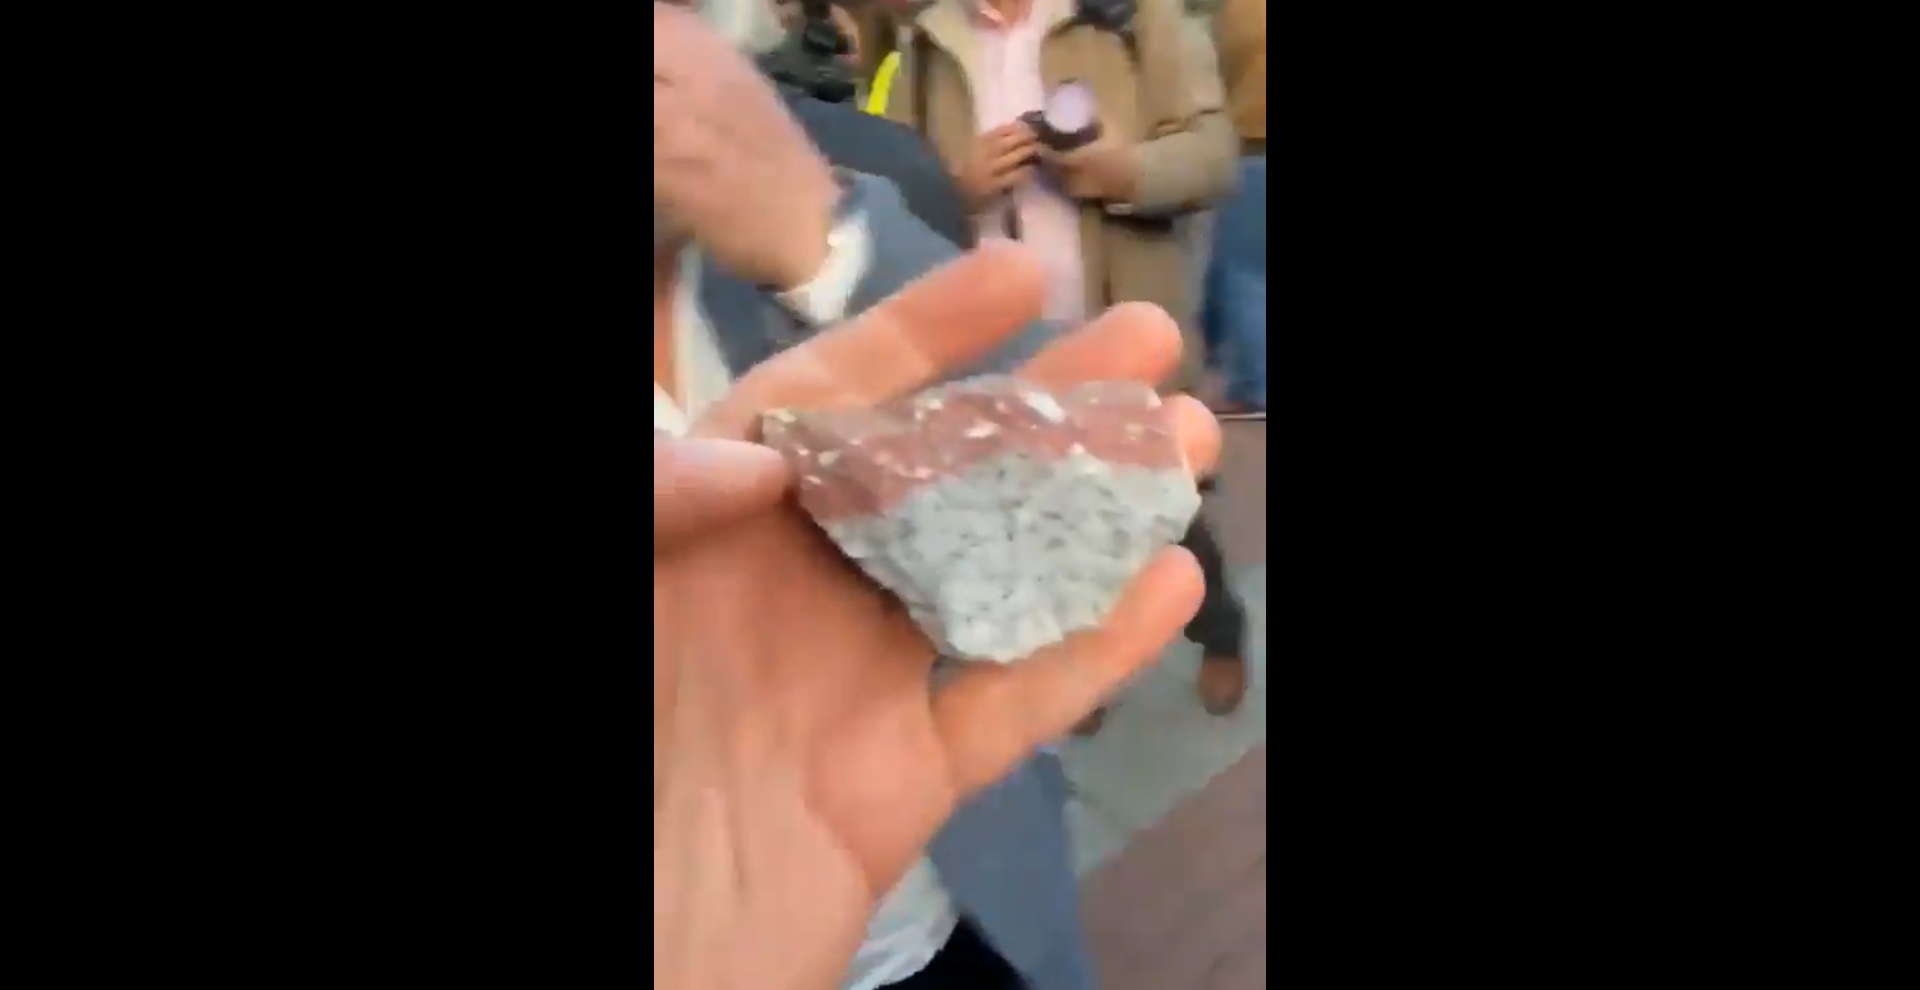 Lewicowi aktywiści obrzucili prawicową manifestację kamieniami.